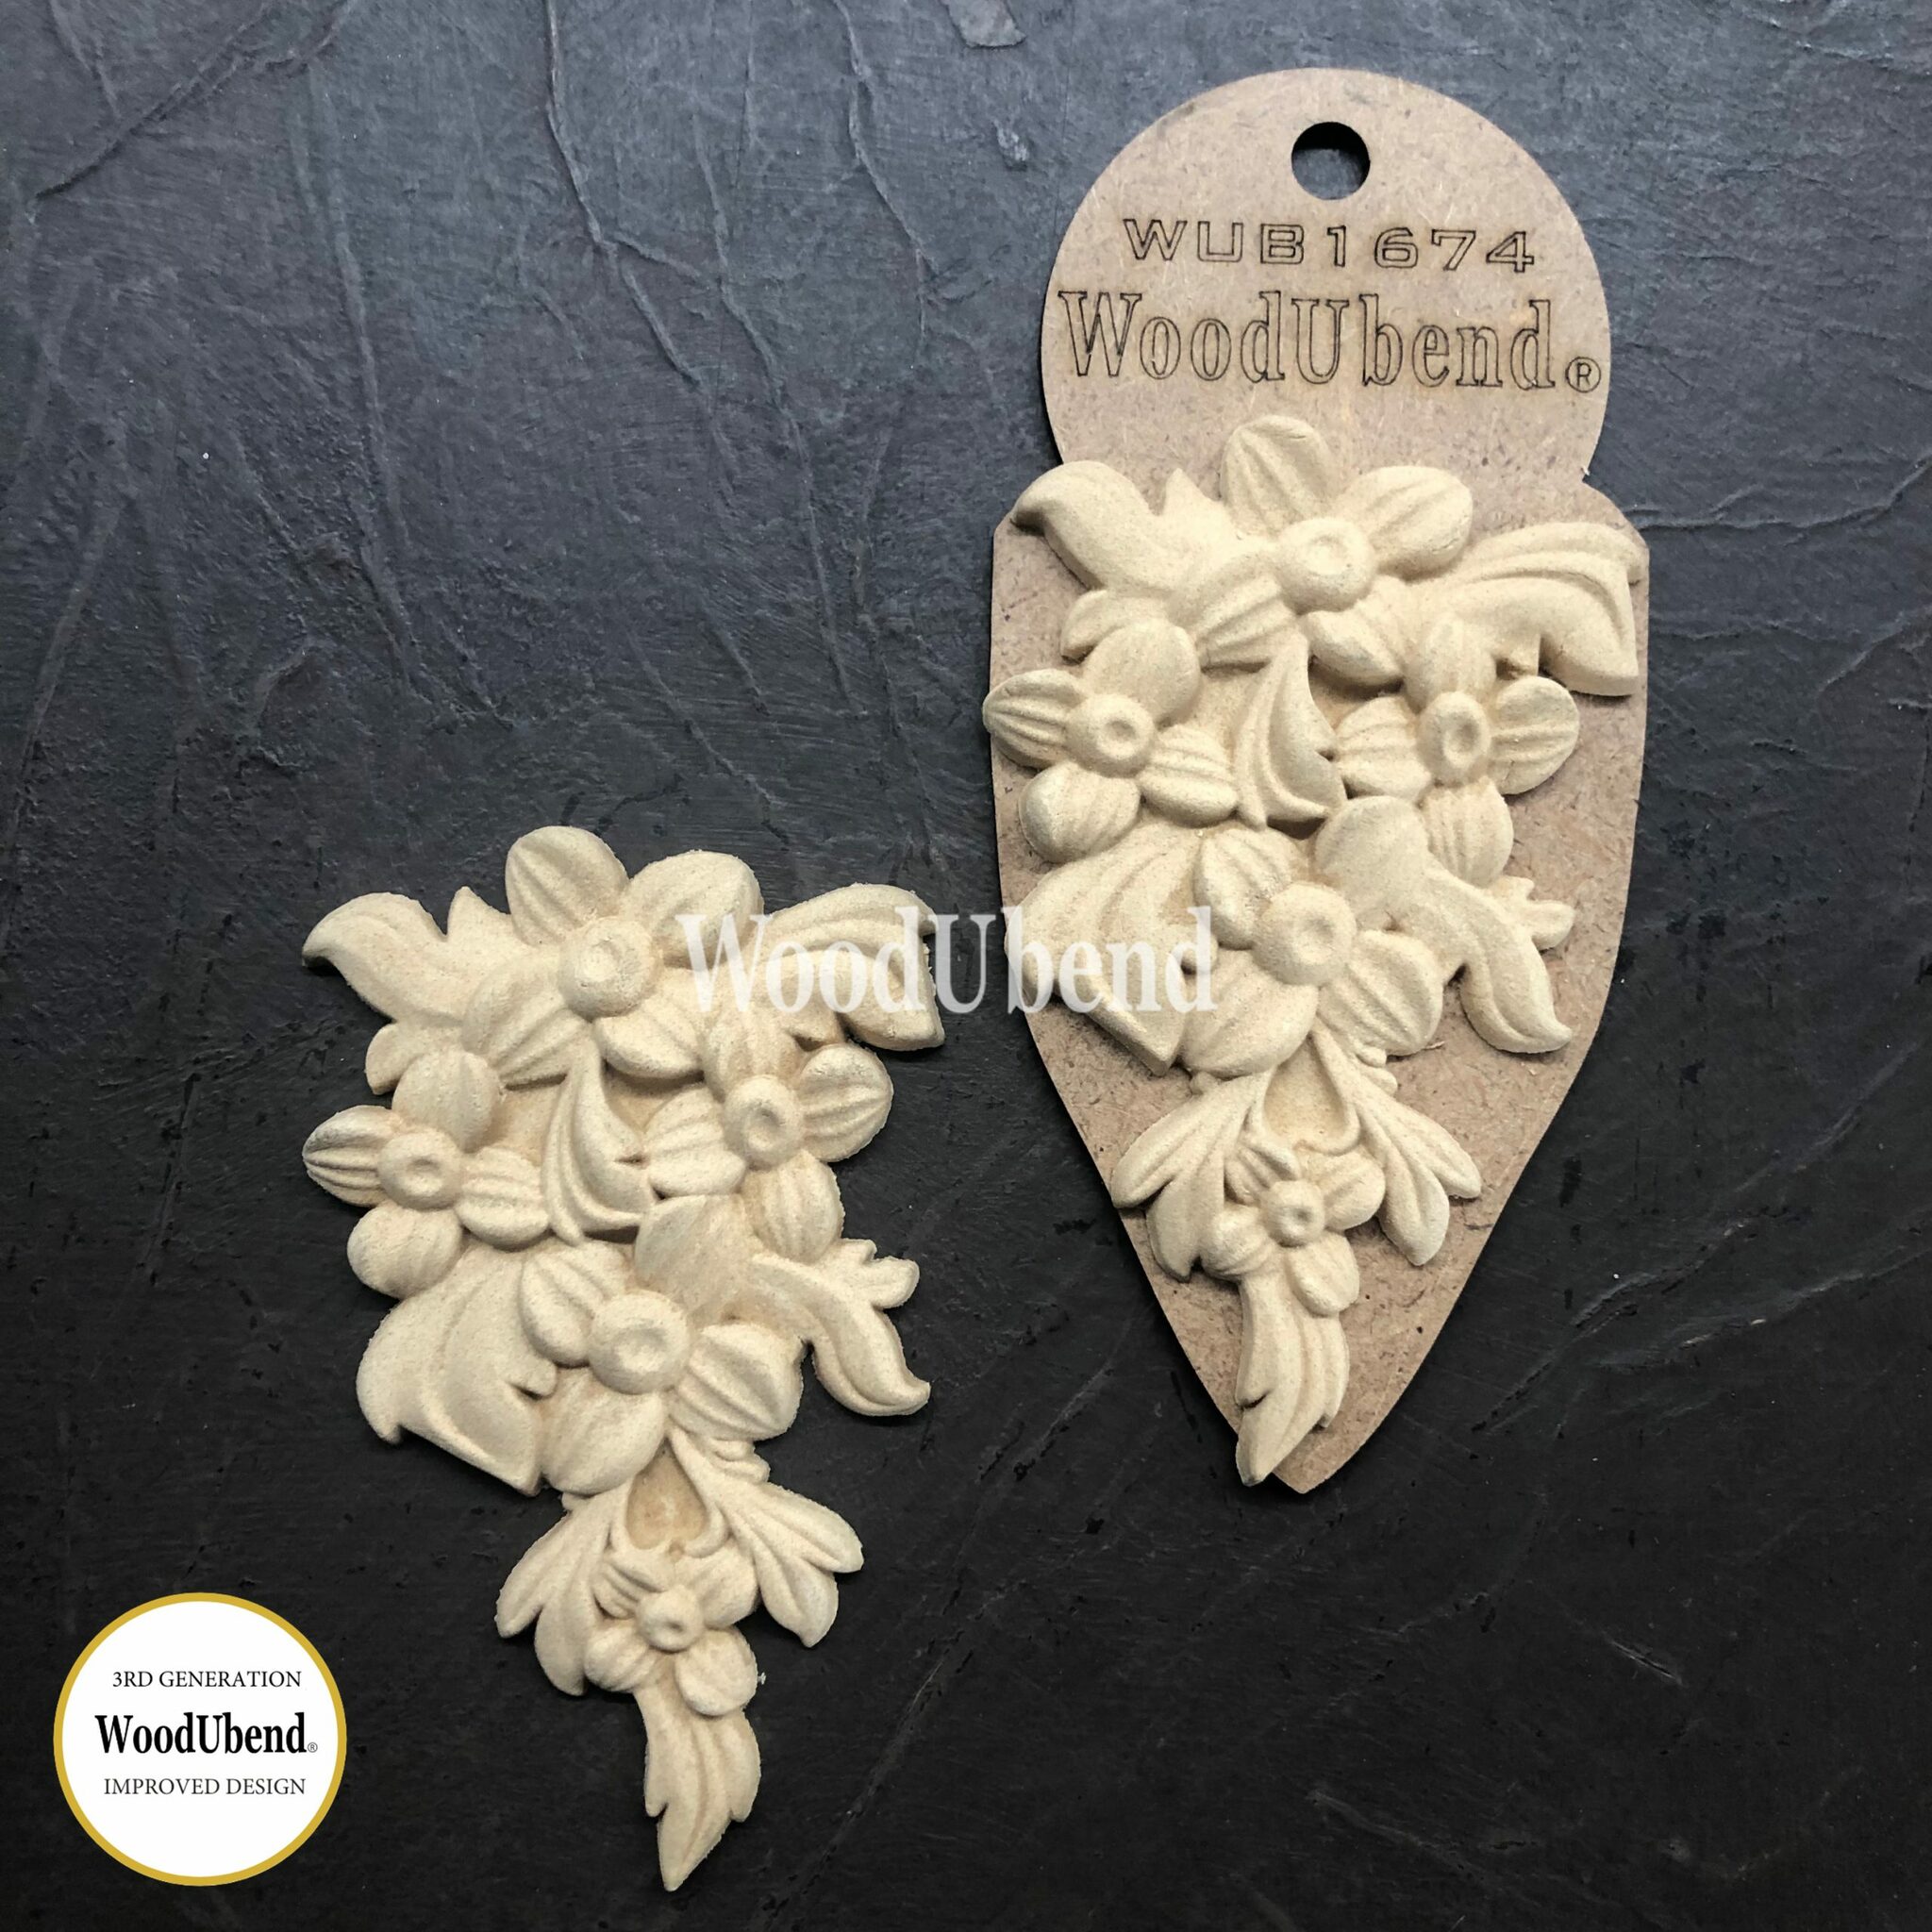 FLEXIBLA ORNAMENT - WoodUbend - Flower Garlands WUB1674 (2-pack)